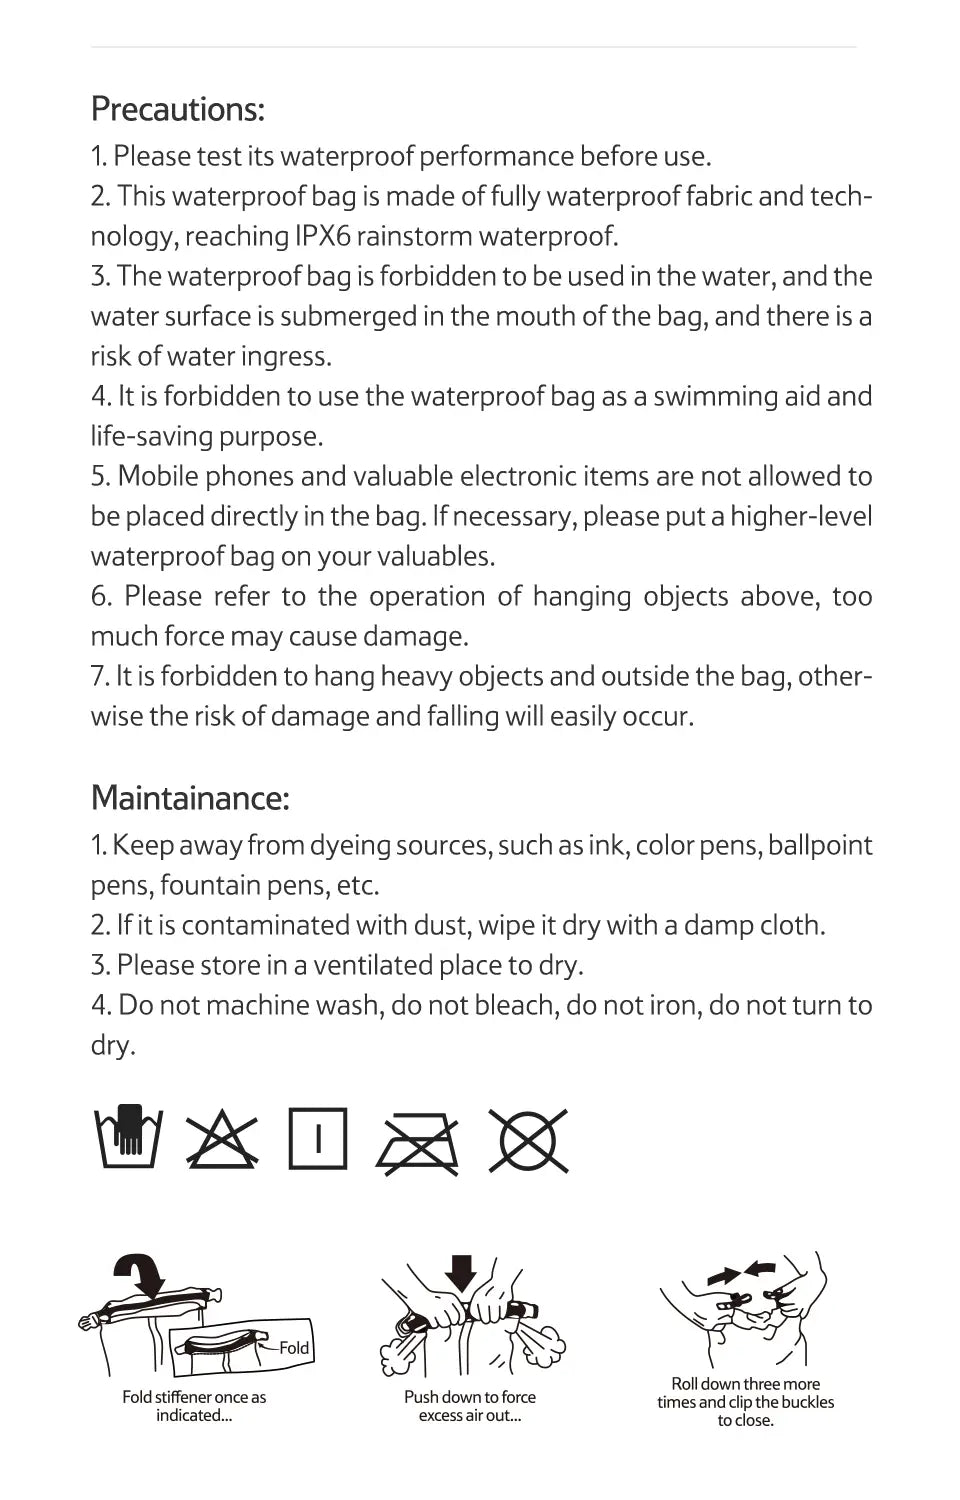 Verschiedene wasserdichte Watrucksäcke – ideal für den Wassersport